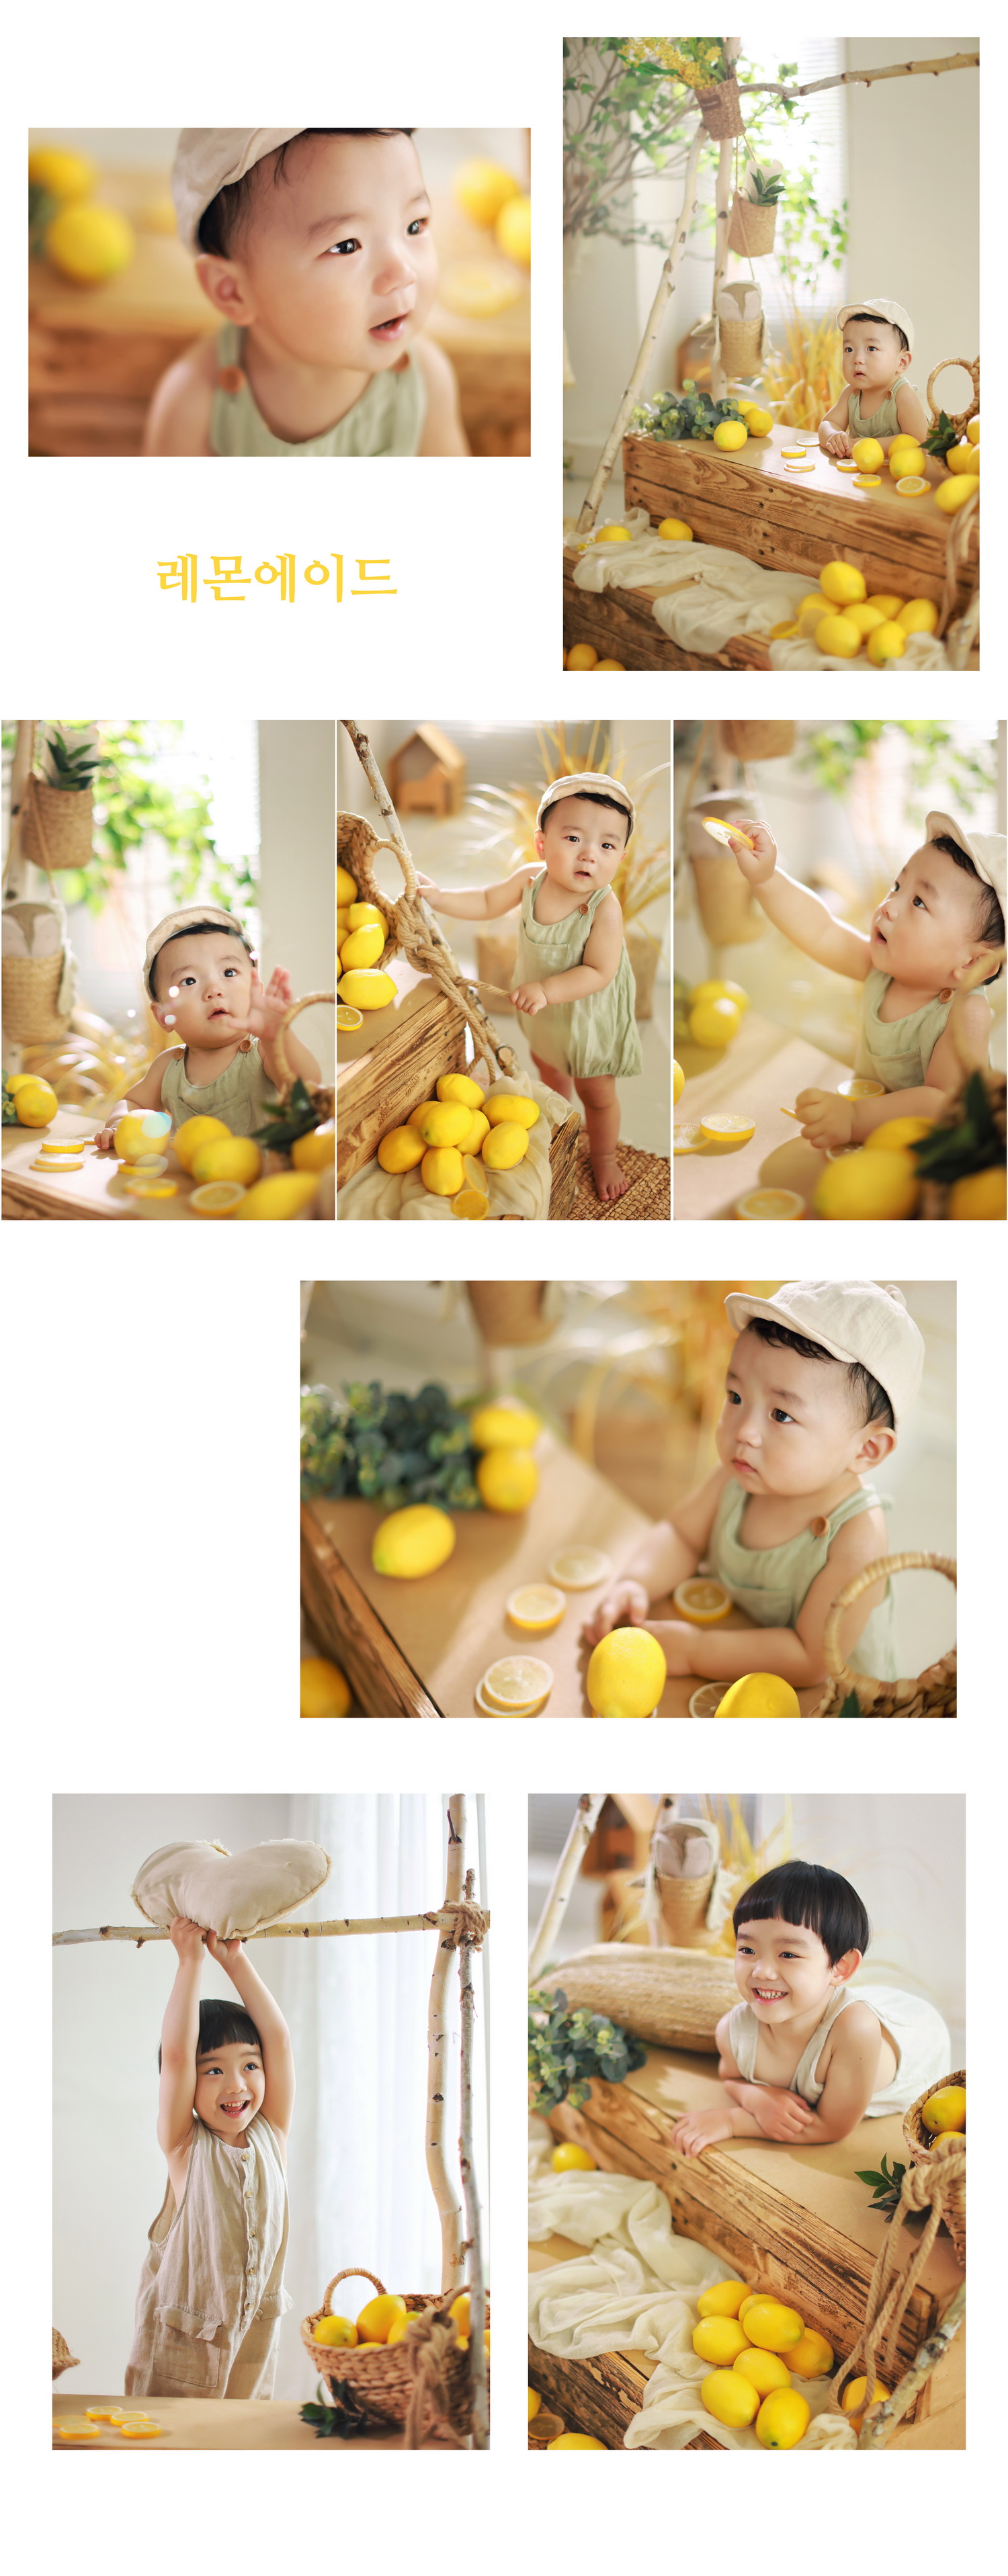 레몬 (2)_크기 조정.jpg